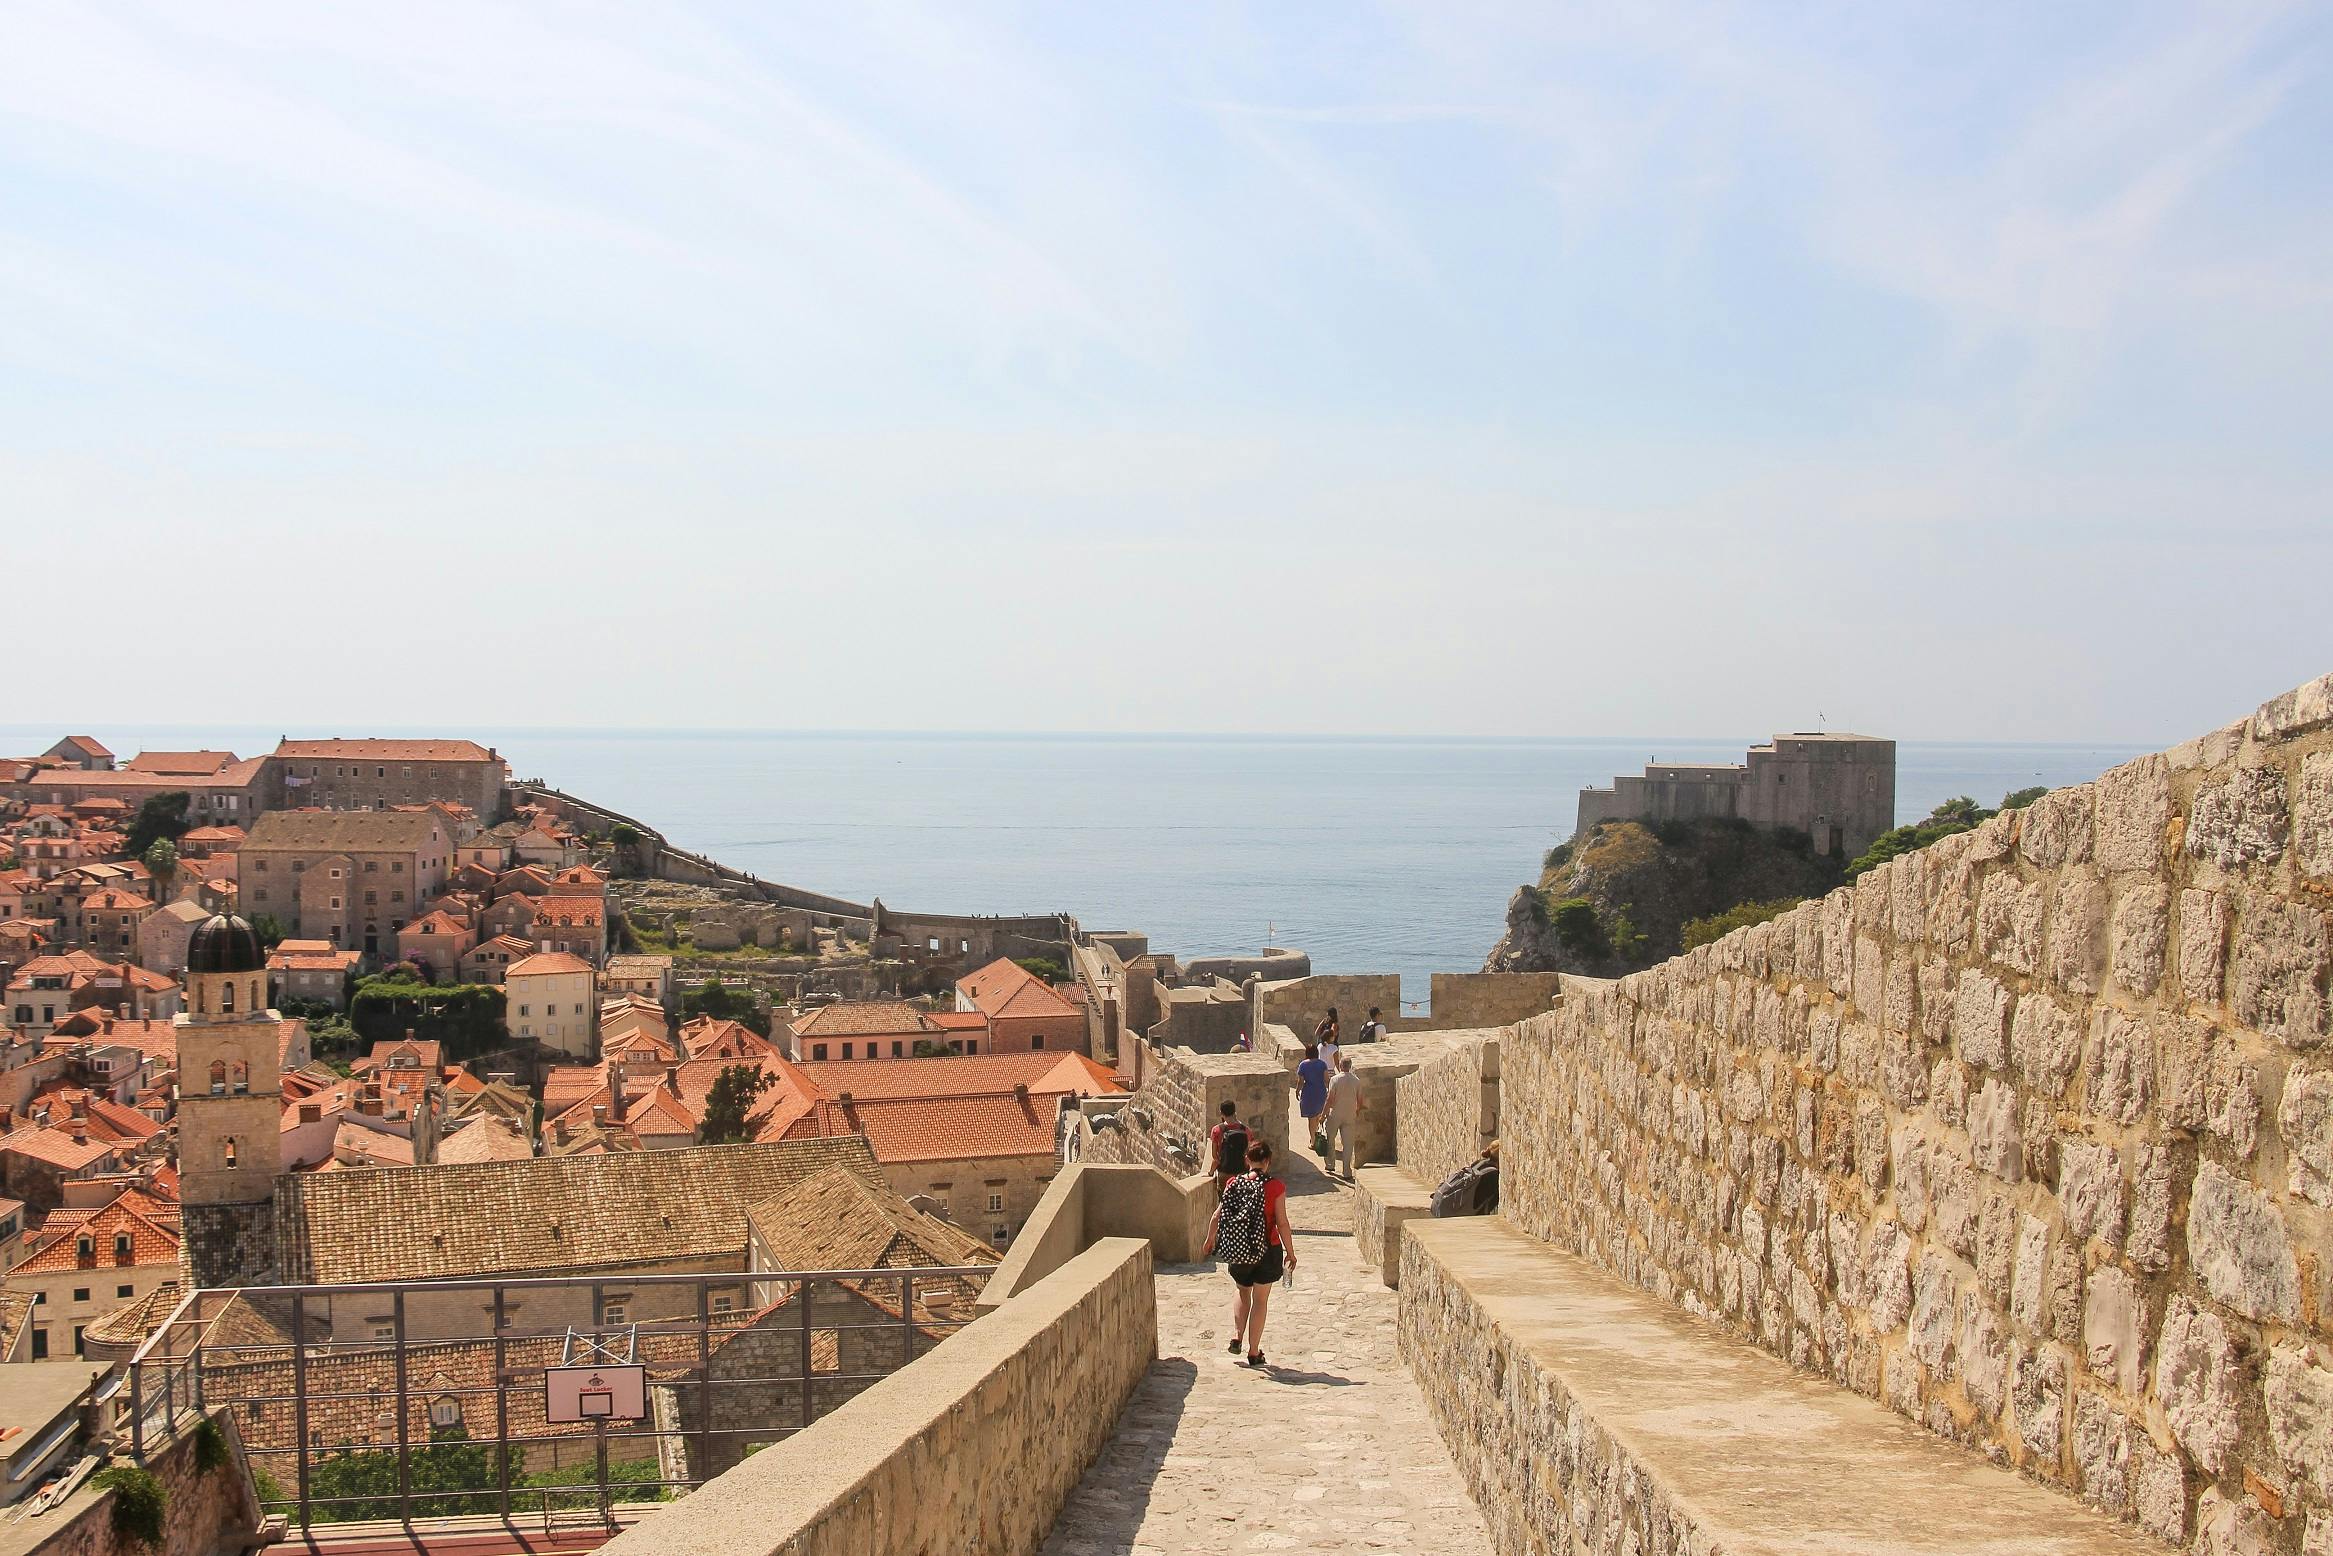 Game of Thrones Walking Tour through Dubrovnik